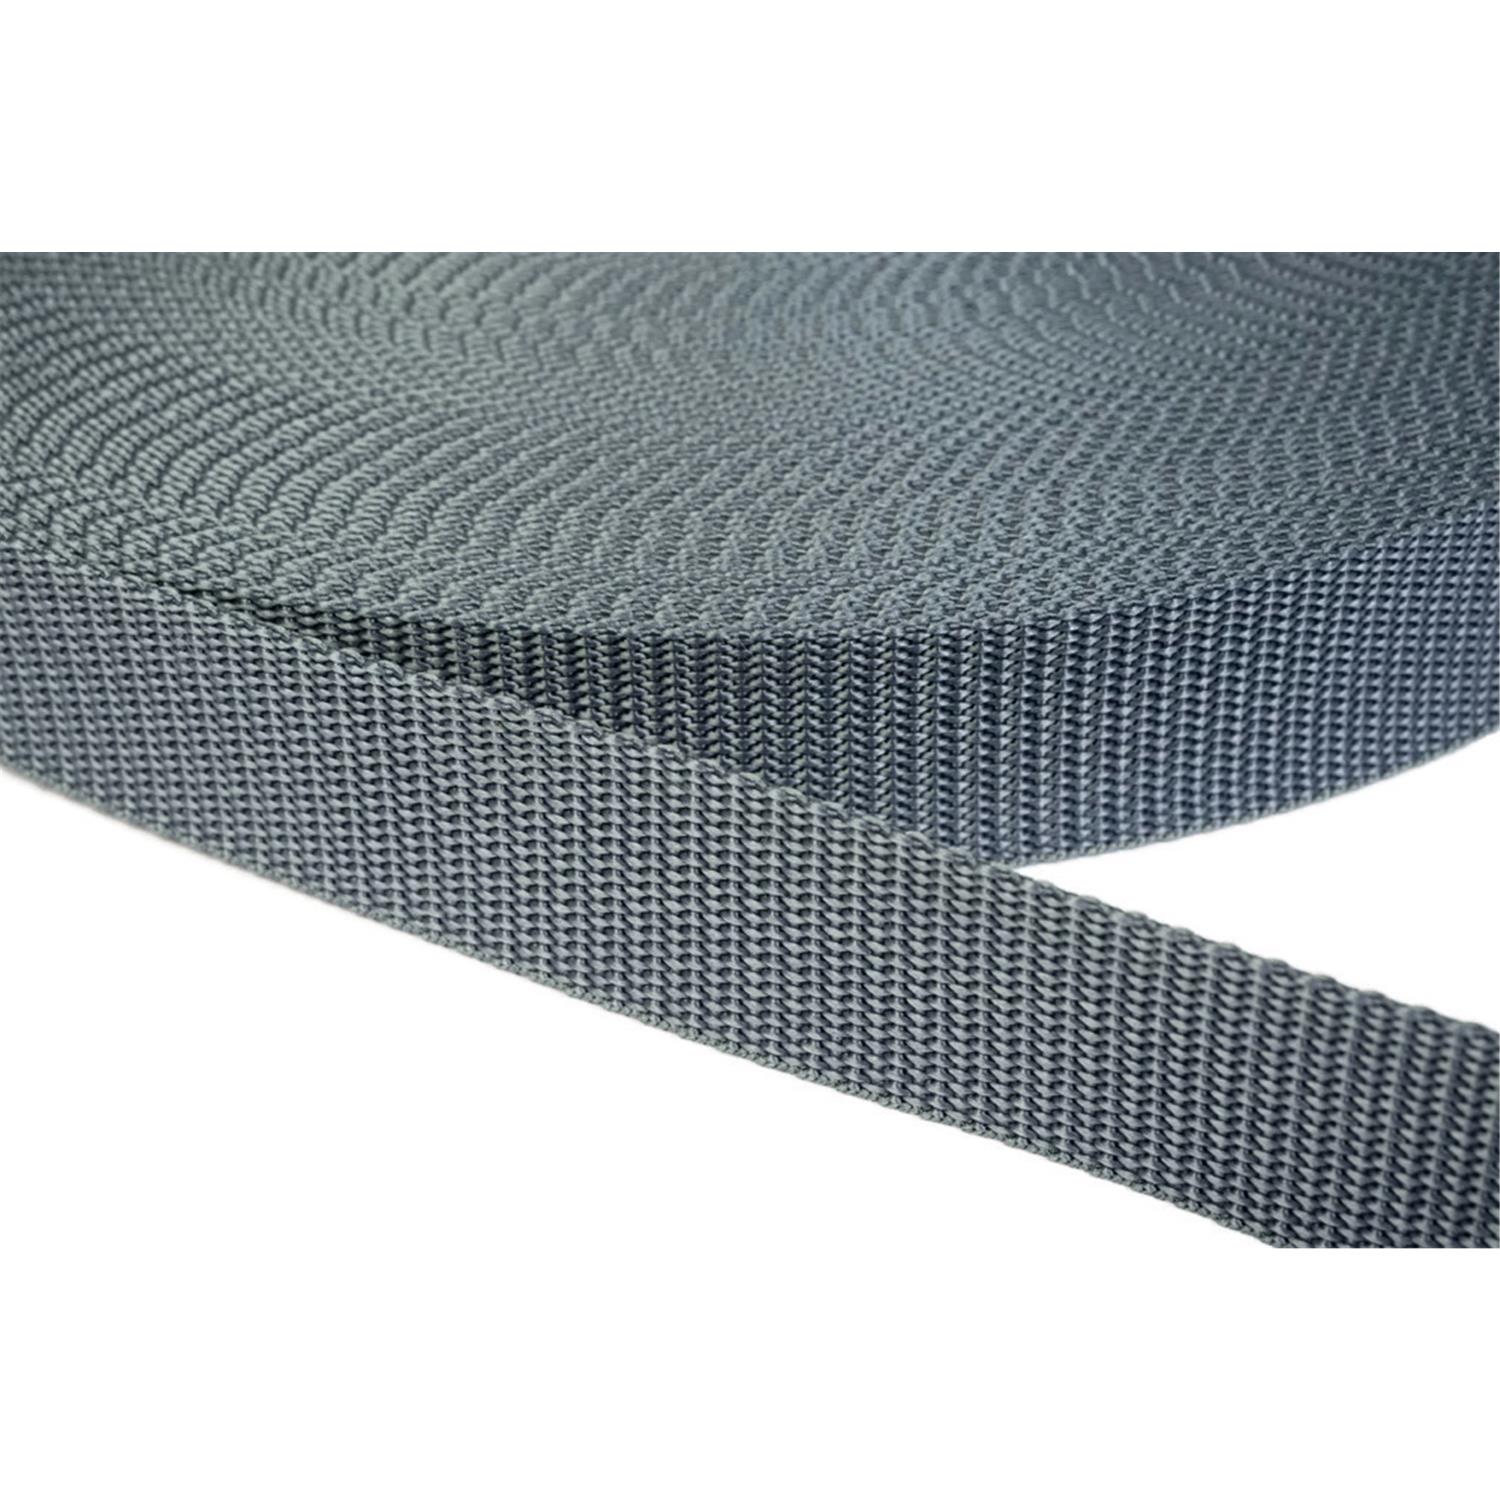 Gurtband 40mm breit aus Polypropylen in 41 Farben 38 - mittelgrau 6 Meter